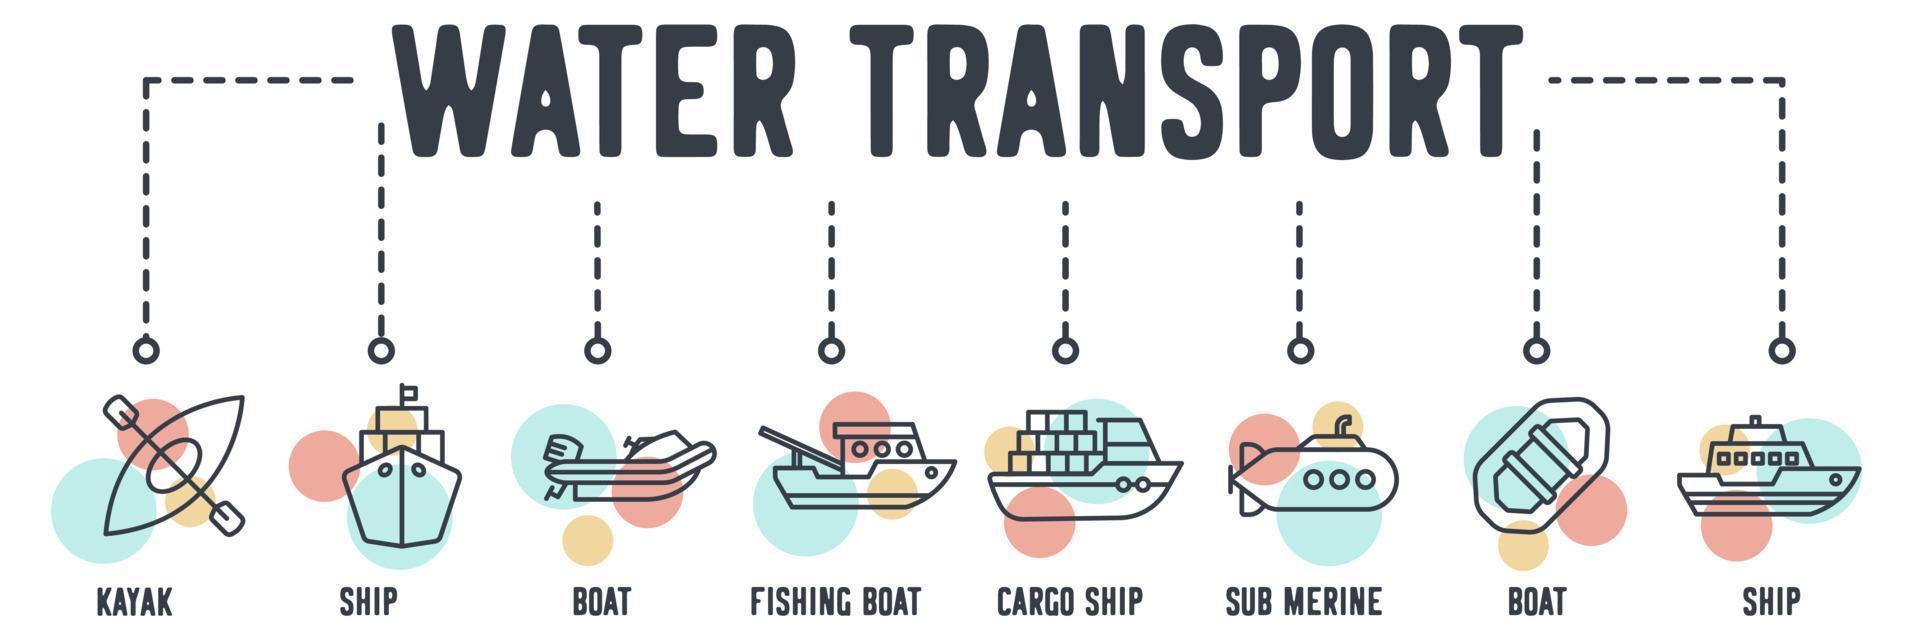 vatten transport webbikon. kajak, fartyg, båt, fiskebåt, lastfartyg, ubåt, båt, fartyg vektor illustration koncept.